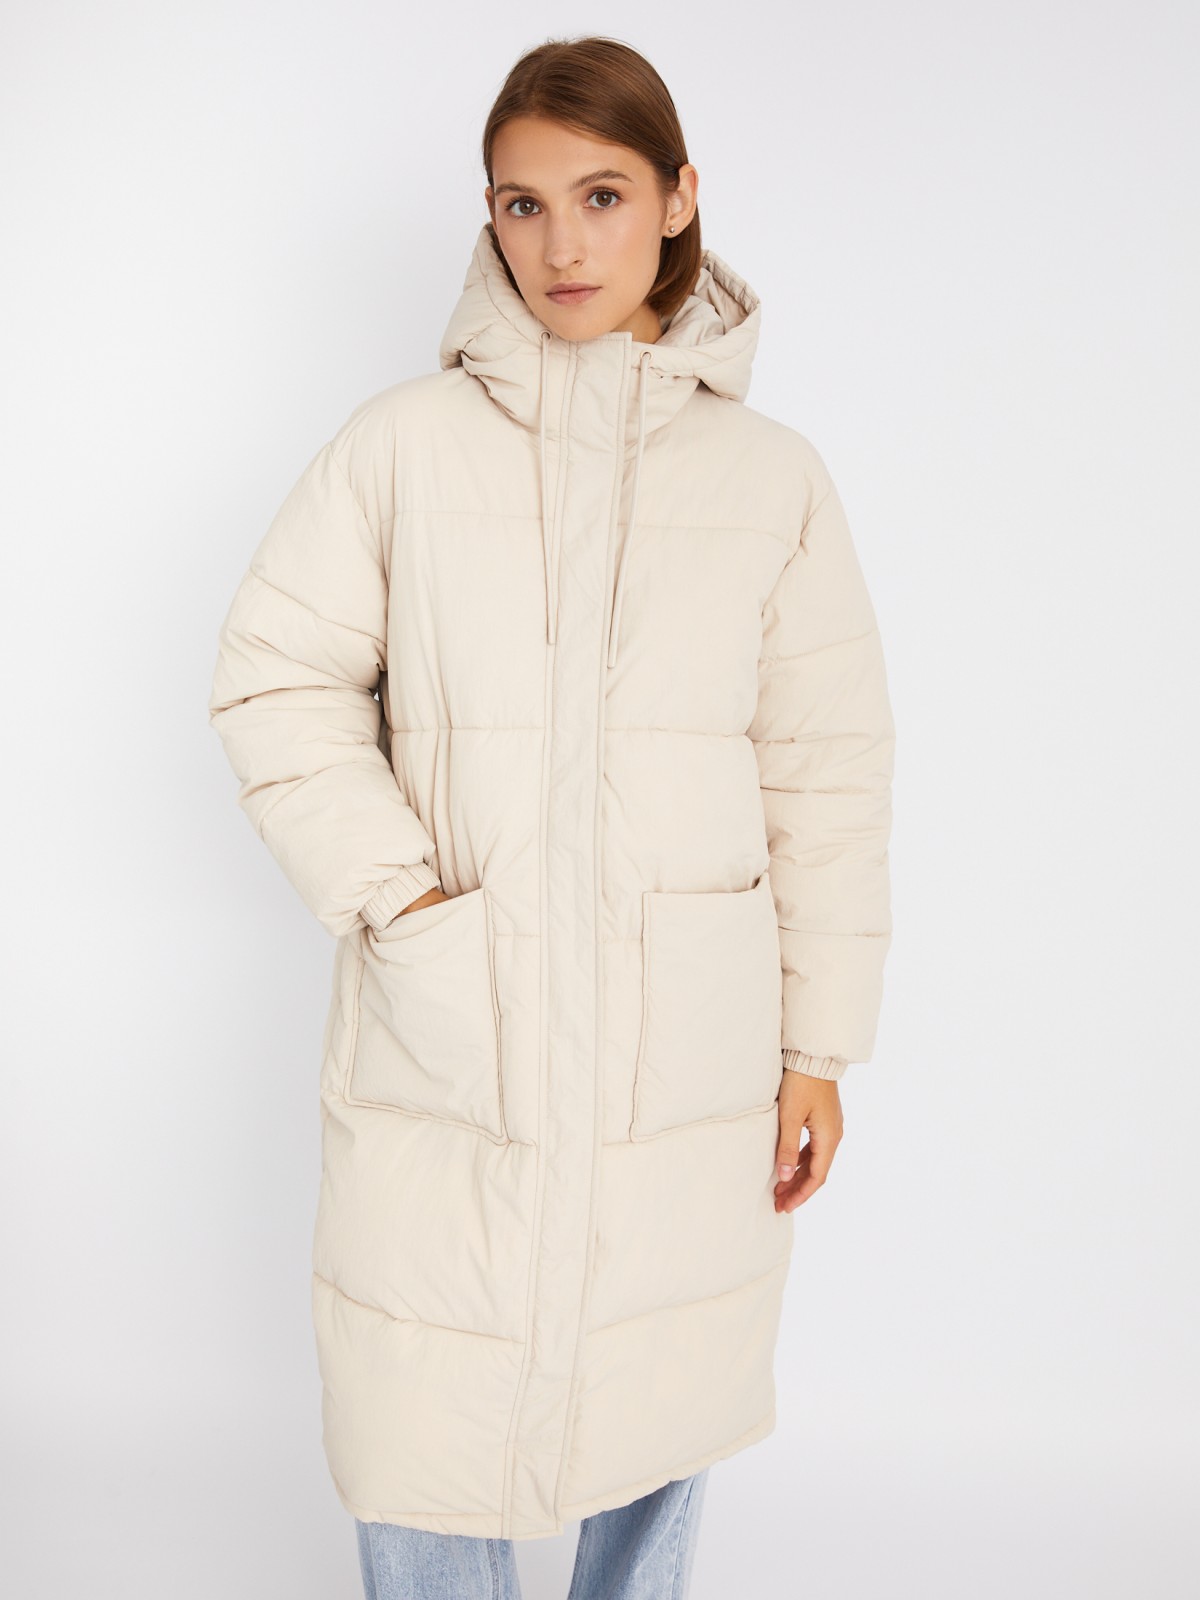 Длинная тёплая стёганая куртка-пальто с капюшоном zolla 023335202084, цвет молоко, размер XS - фото 3